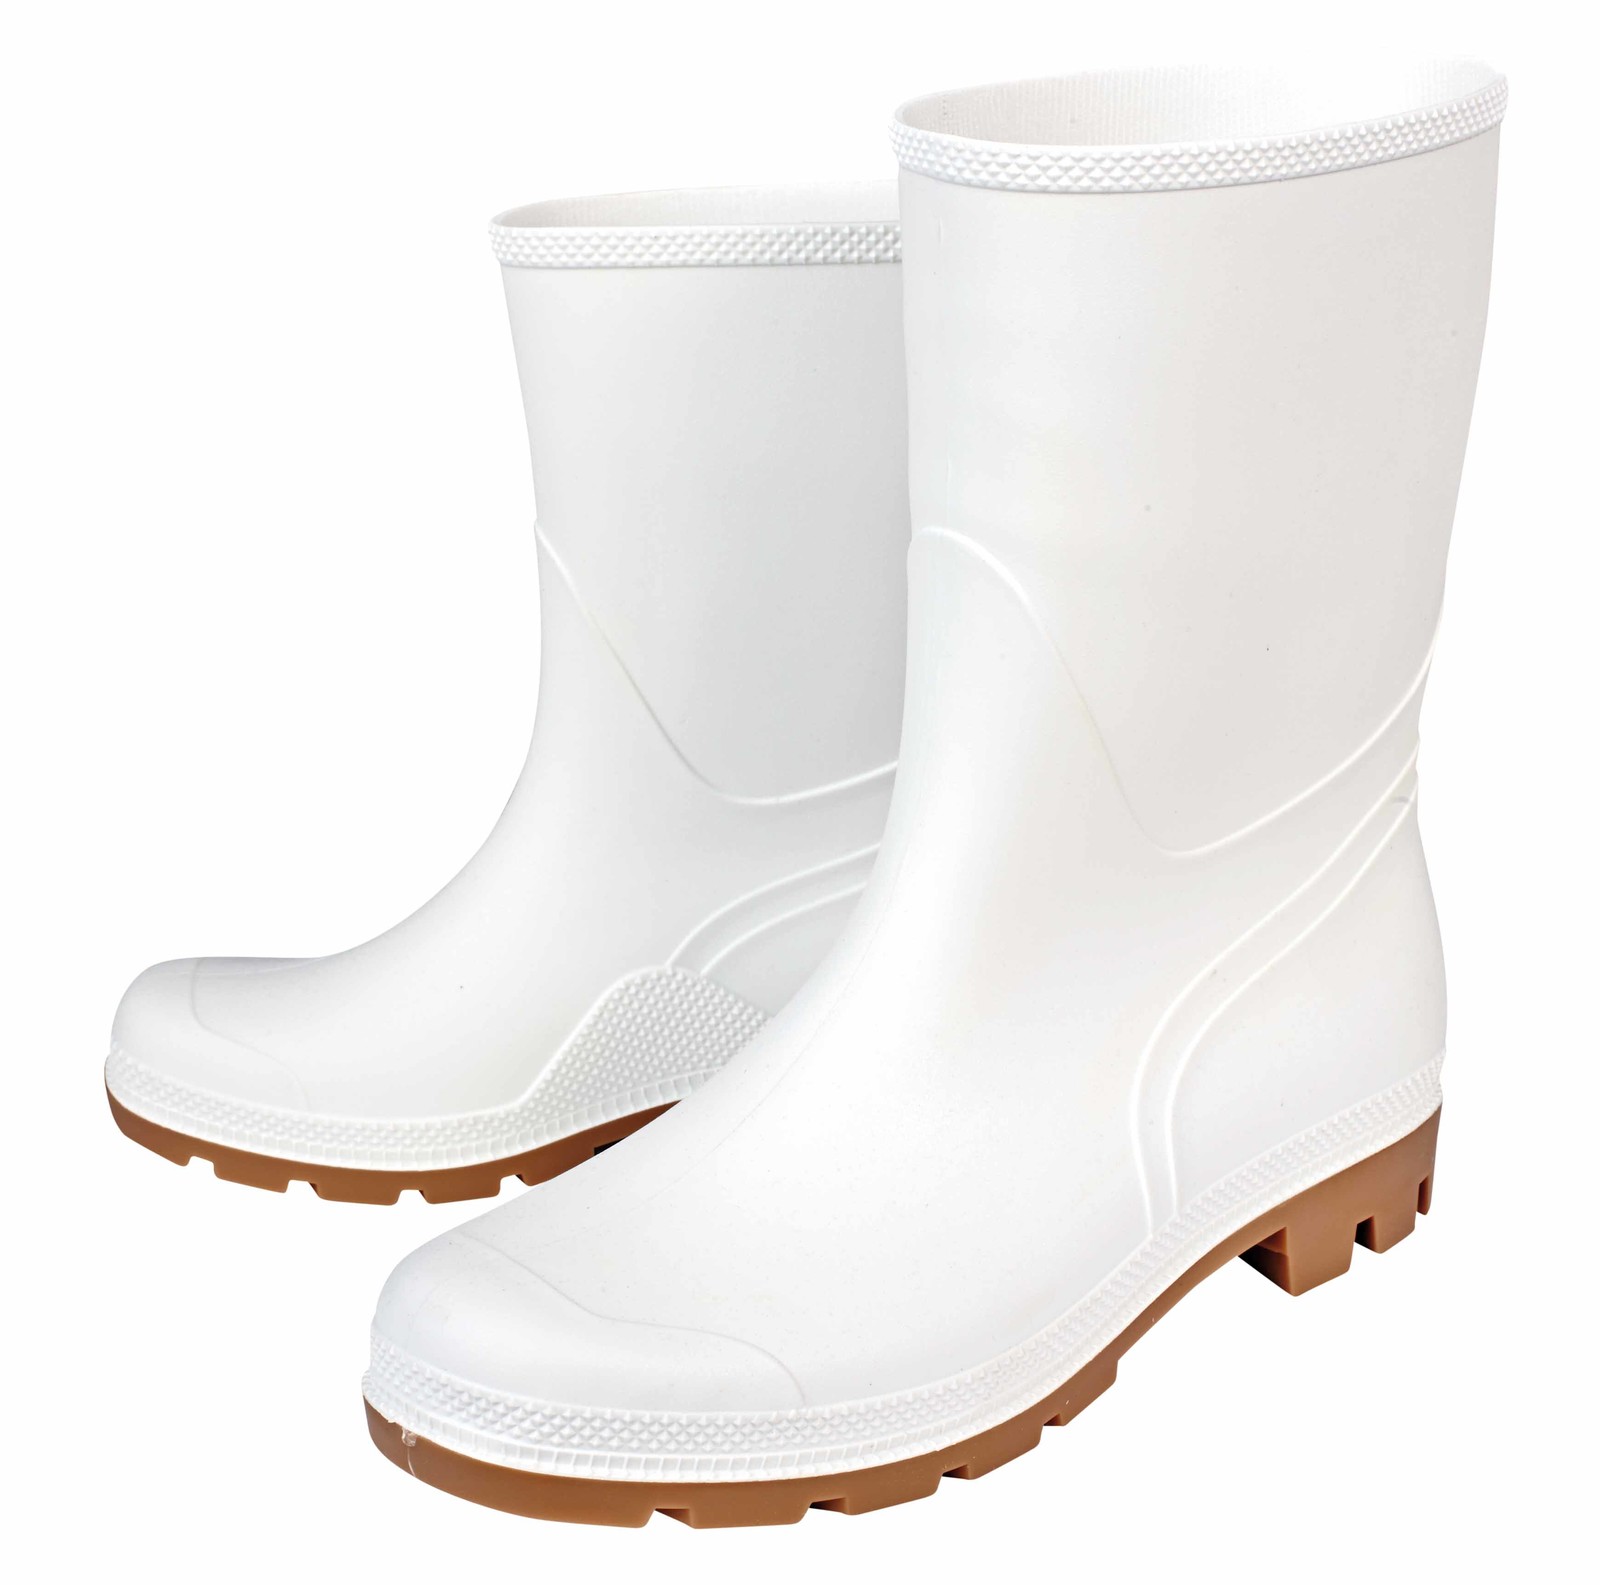 Gumáky Boots Troncheto PVC nízke - veľkosť: 36, farba: biela